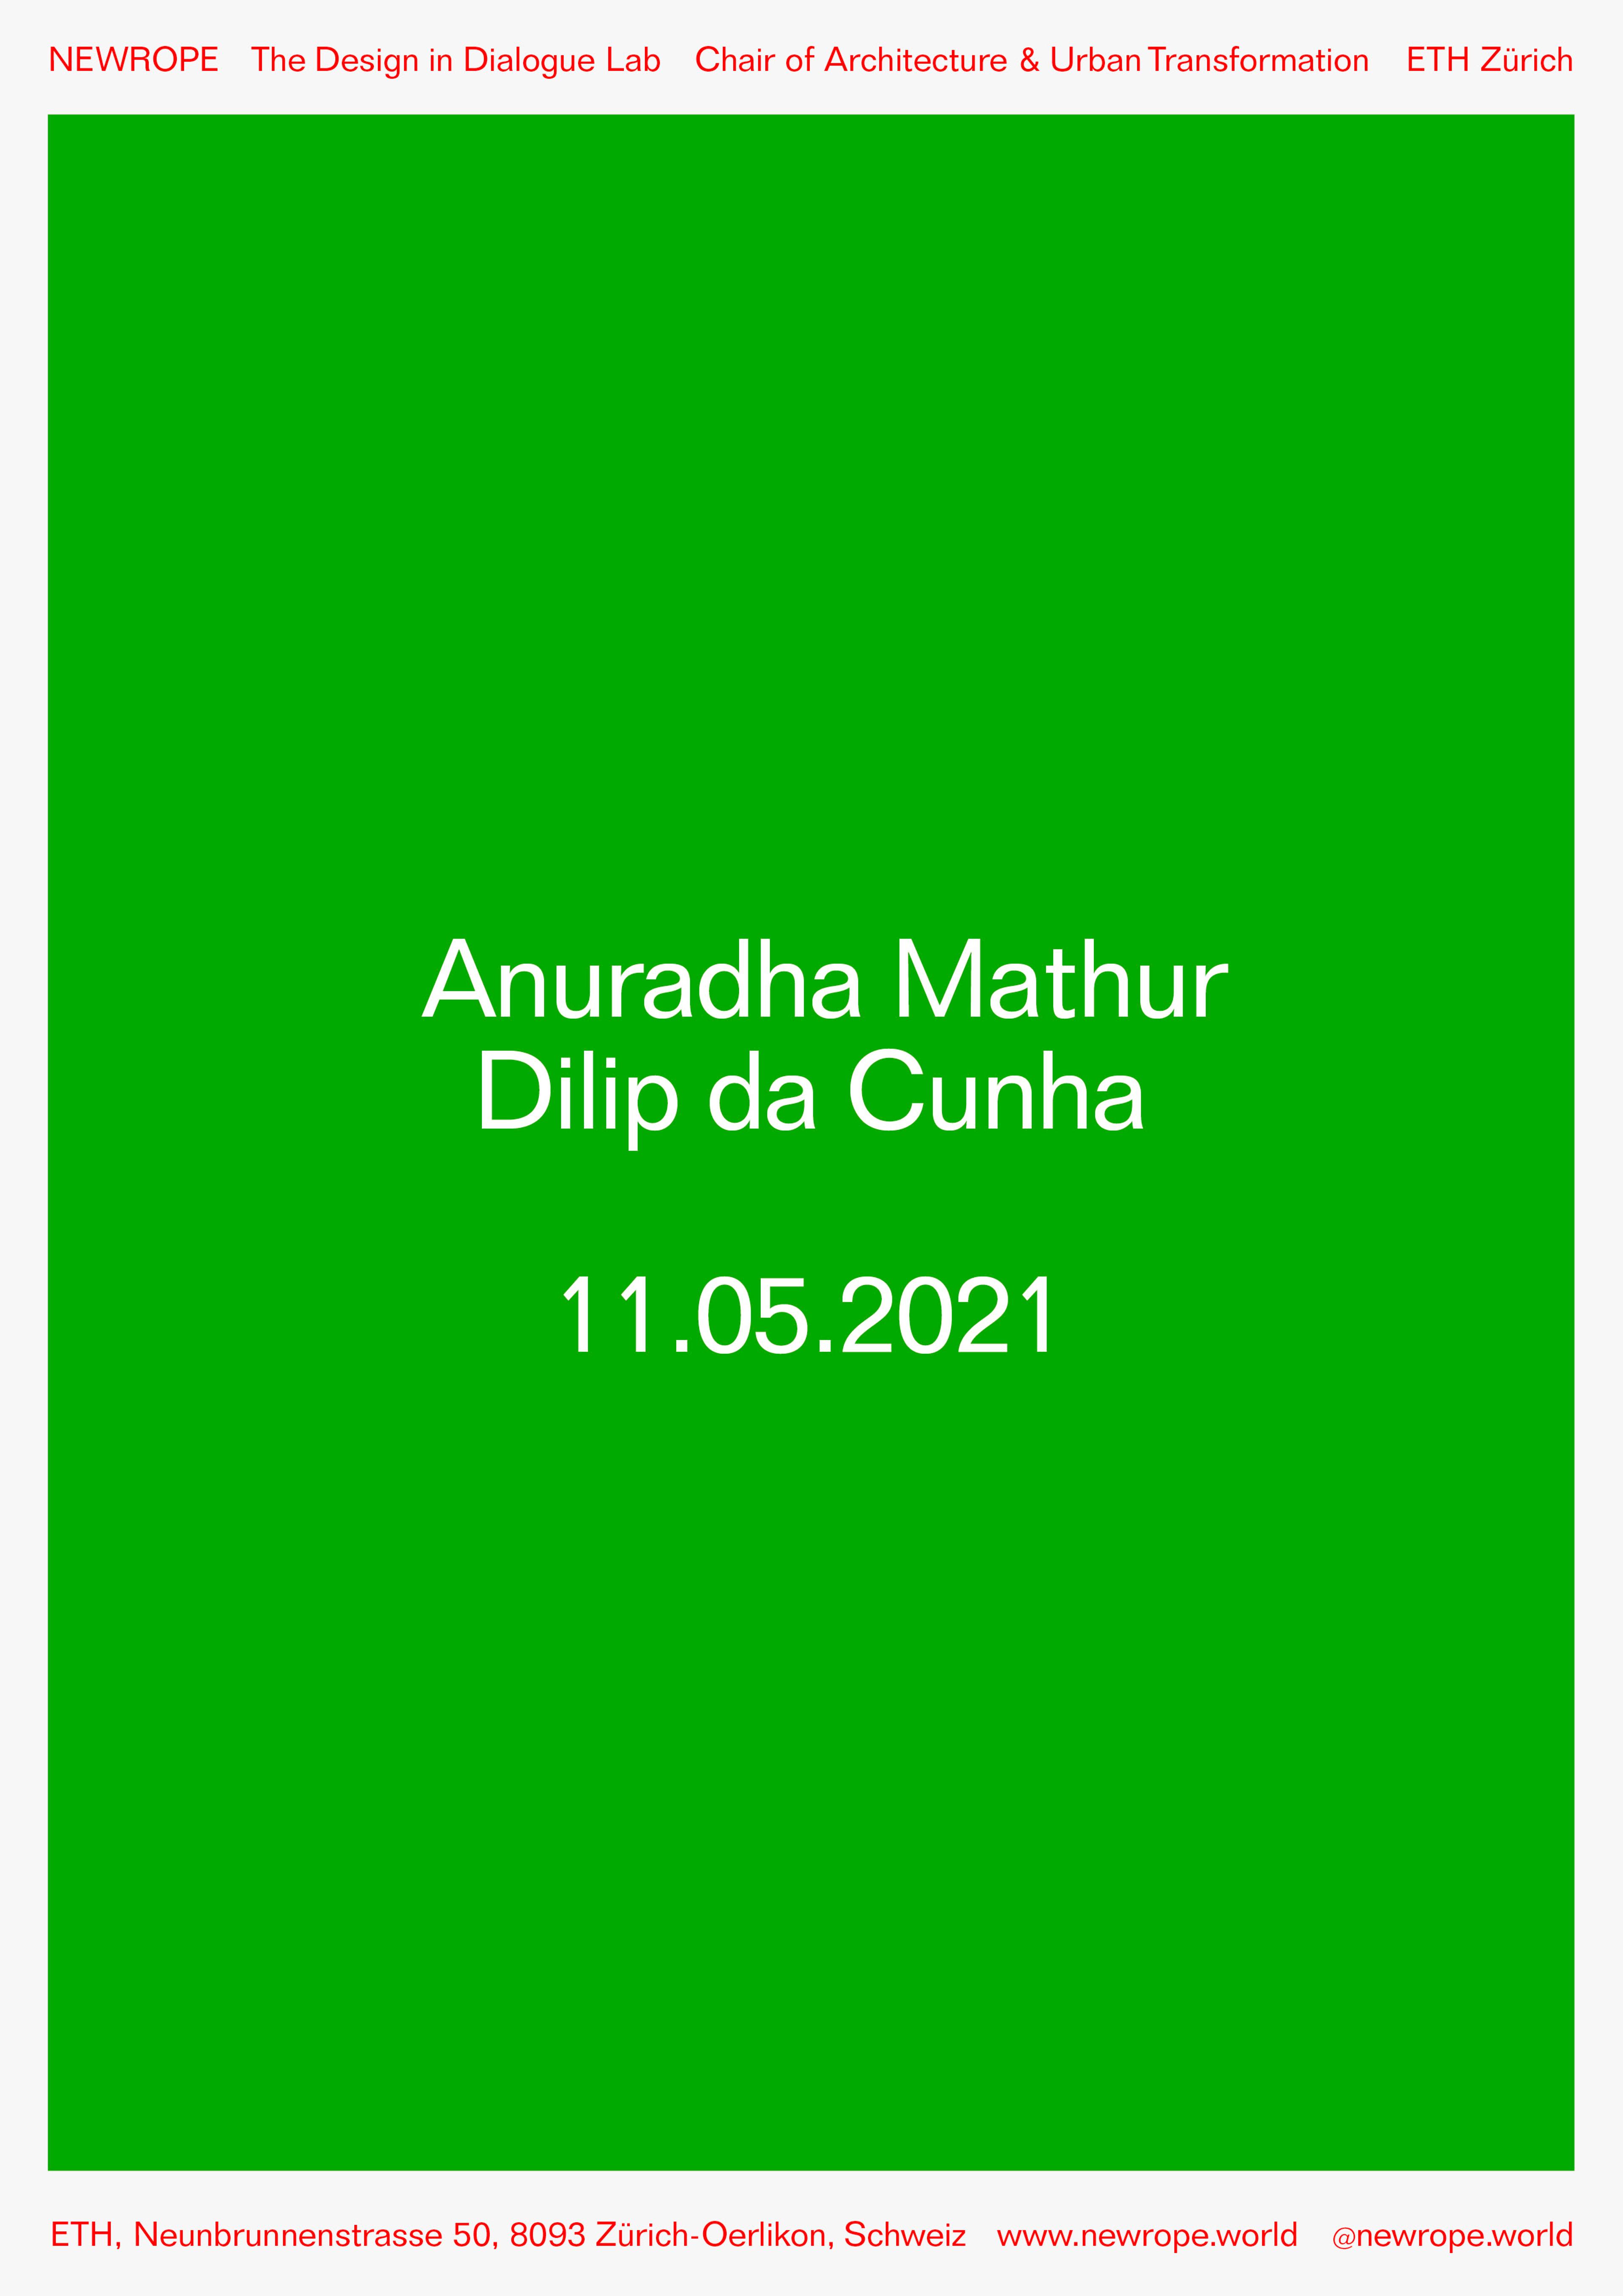 Network: Anuradha Mathur and Dilip da Cunha